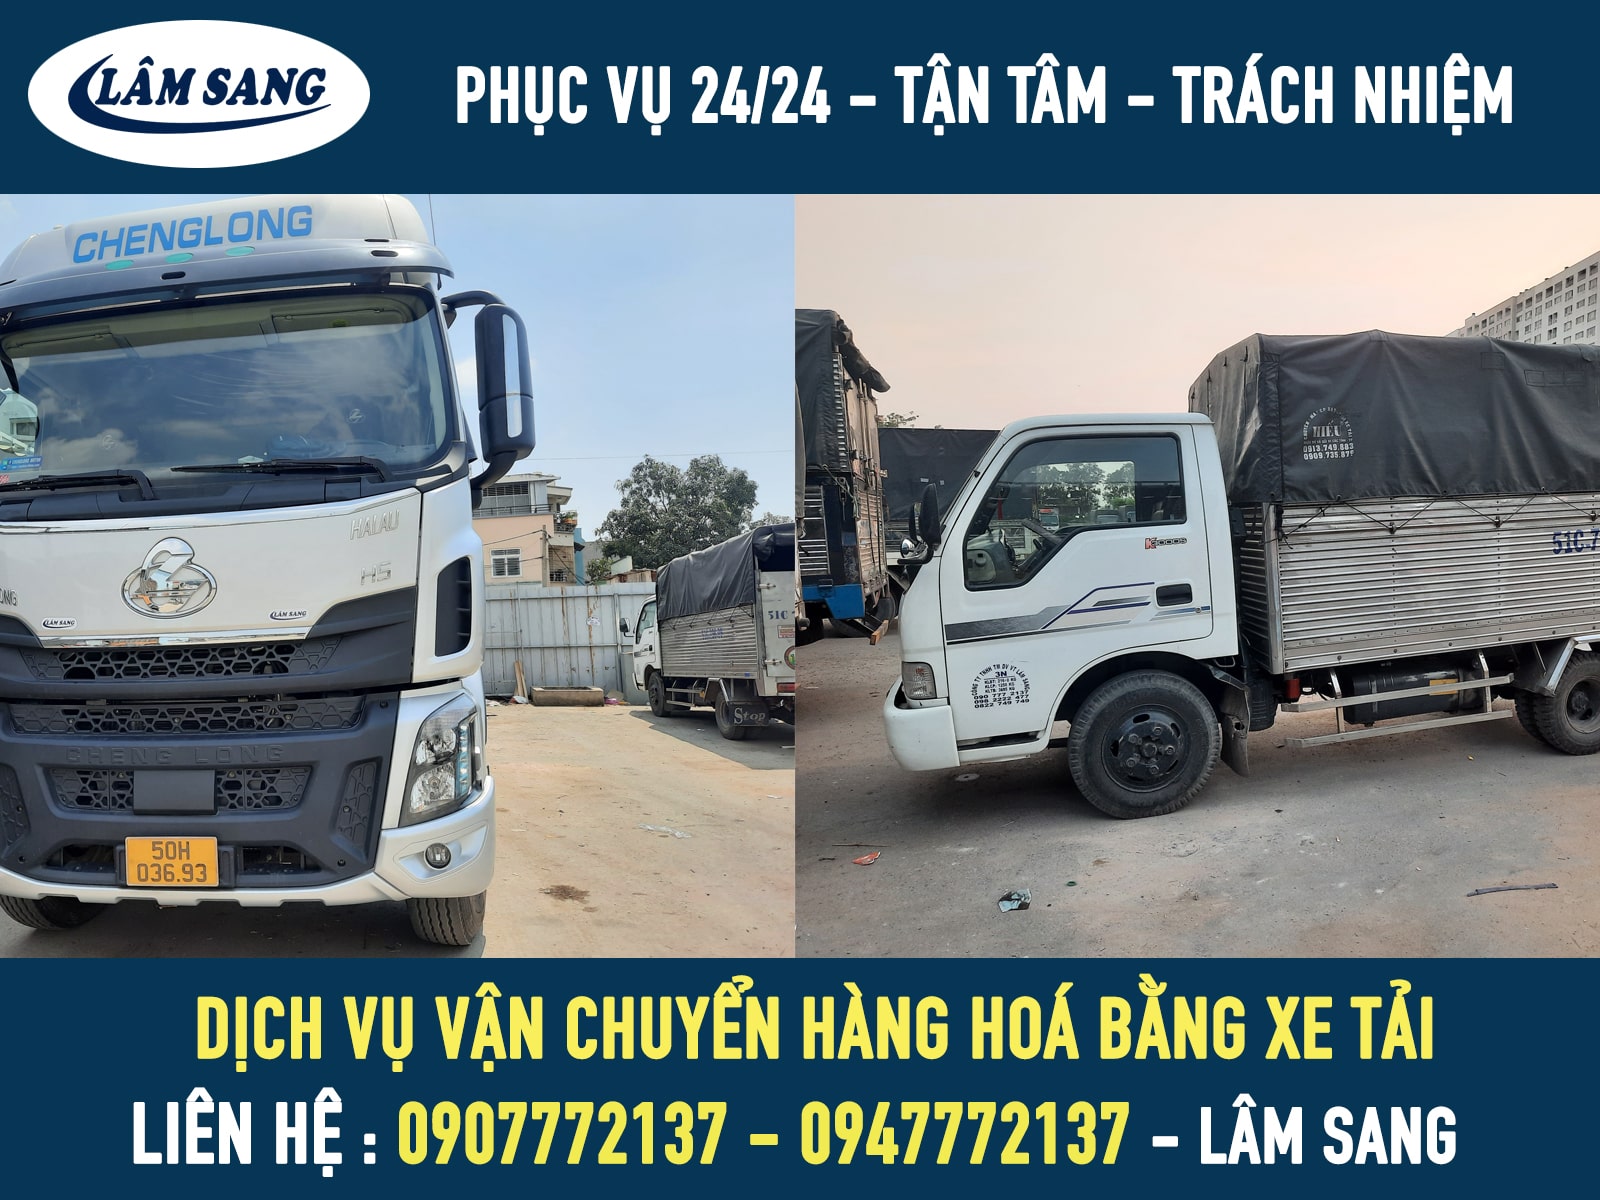 Dịch vụ vận chuyển hàng hoá bằng xe tải chở hàng - Lâm Sang